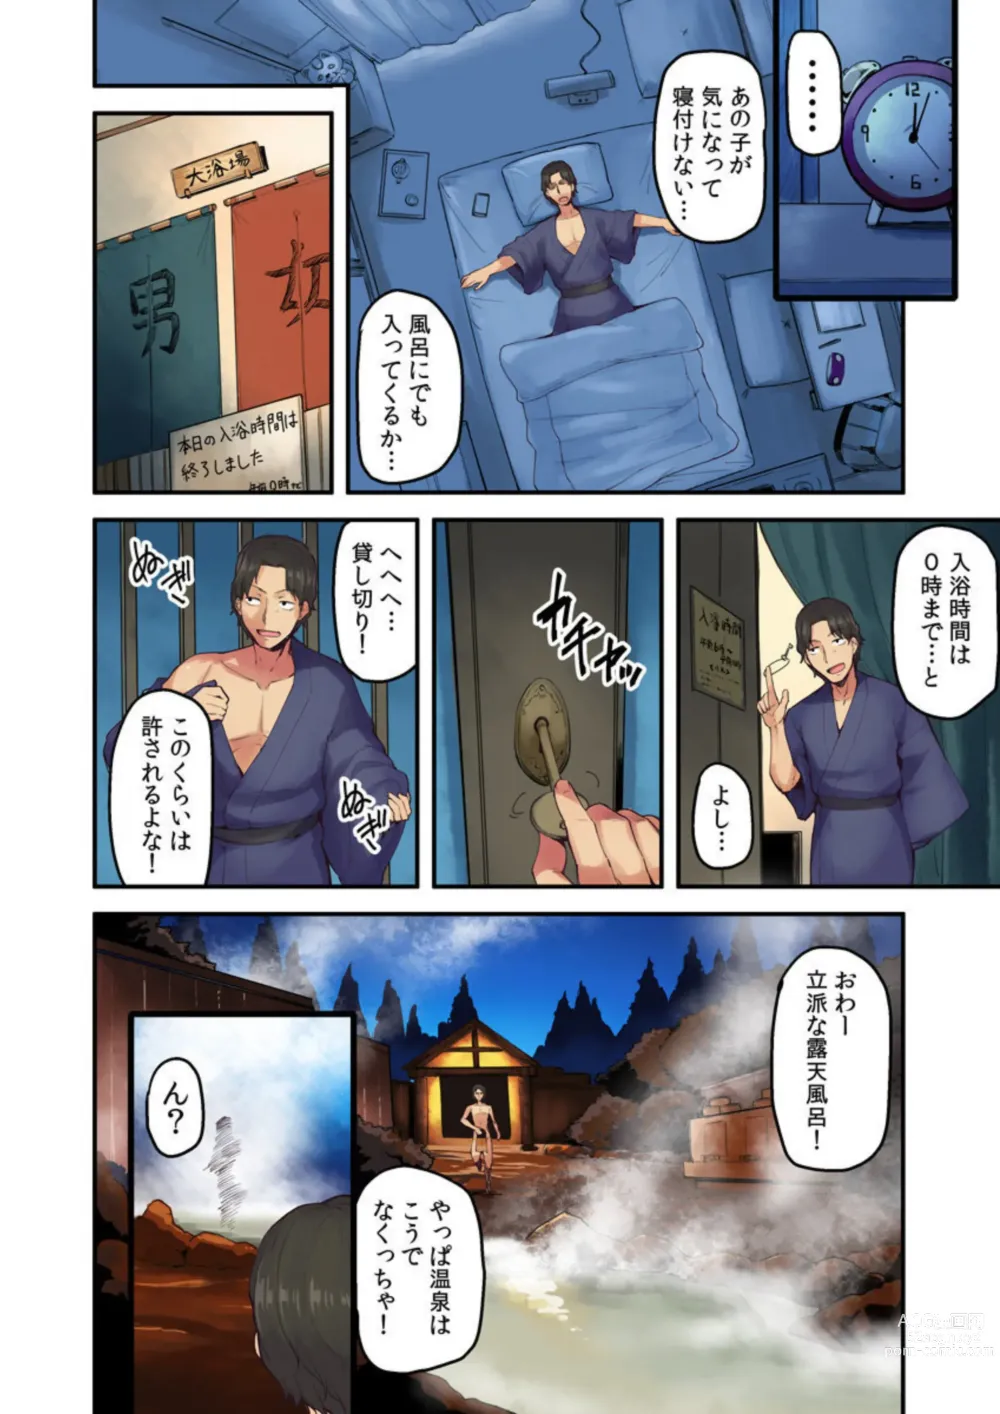 Page 6 of manga Ryokan ni Sumitsuku Oppai-chan ~Nigoriyu no Naka dashi Ecchi shite mo Barenai yo ne~ Vol. 2